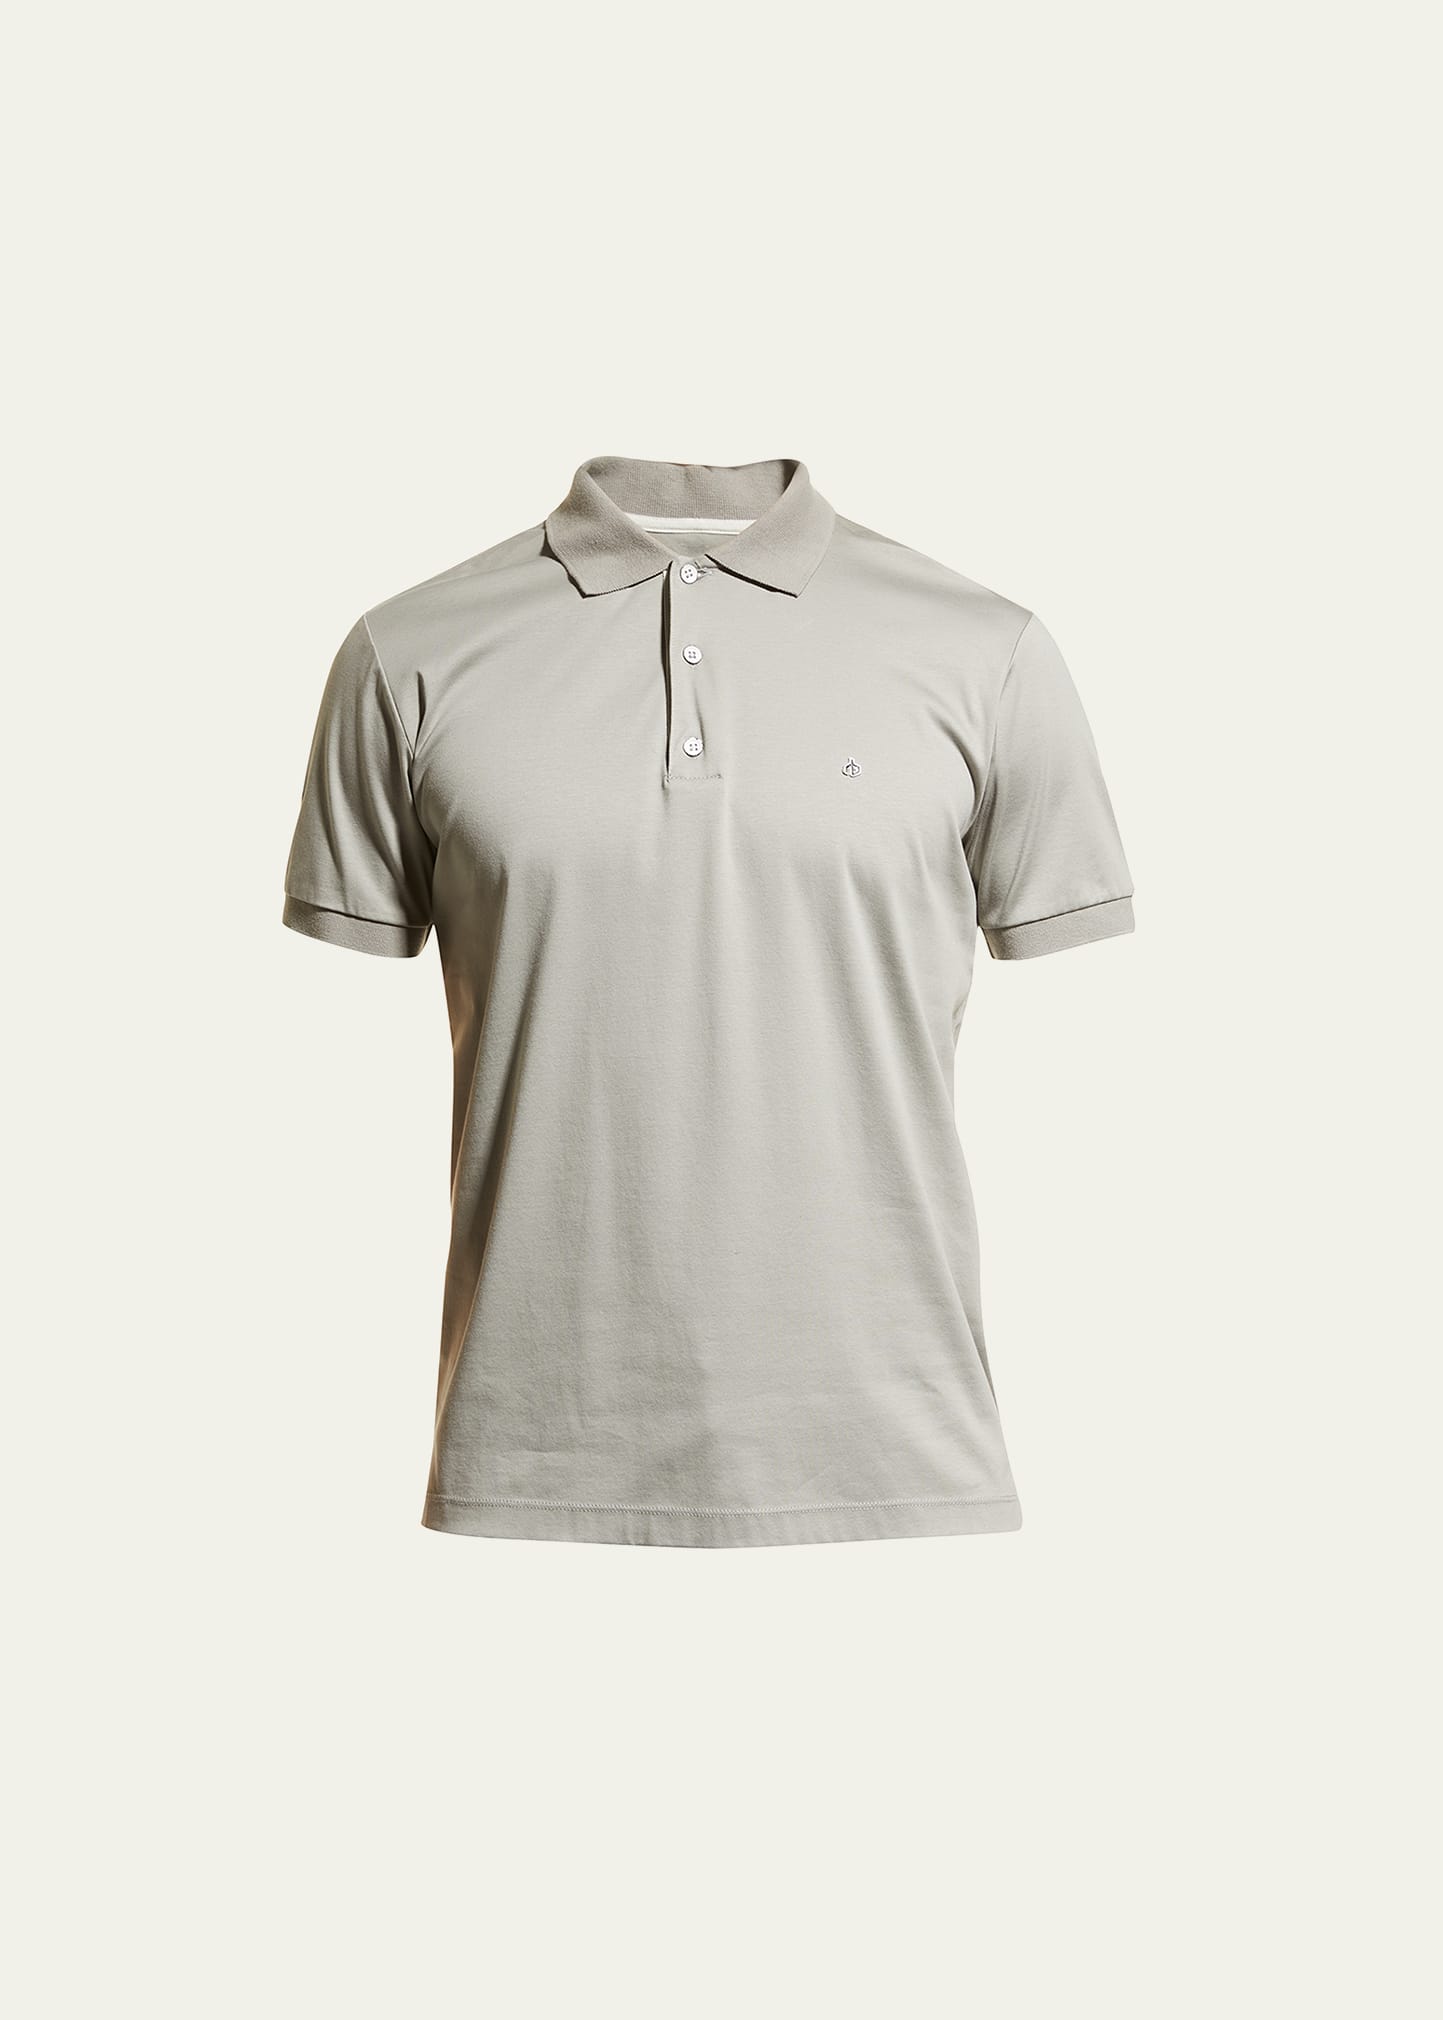 Men's Interlock Knit Polo Shirt